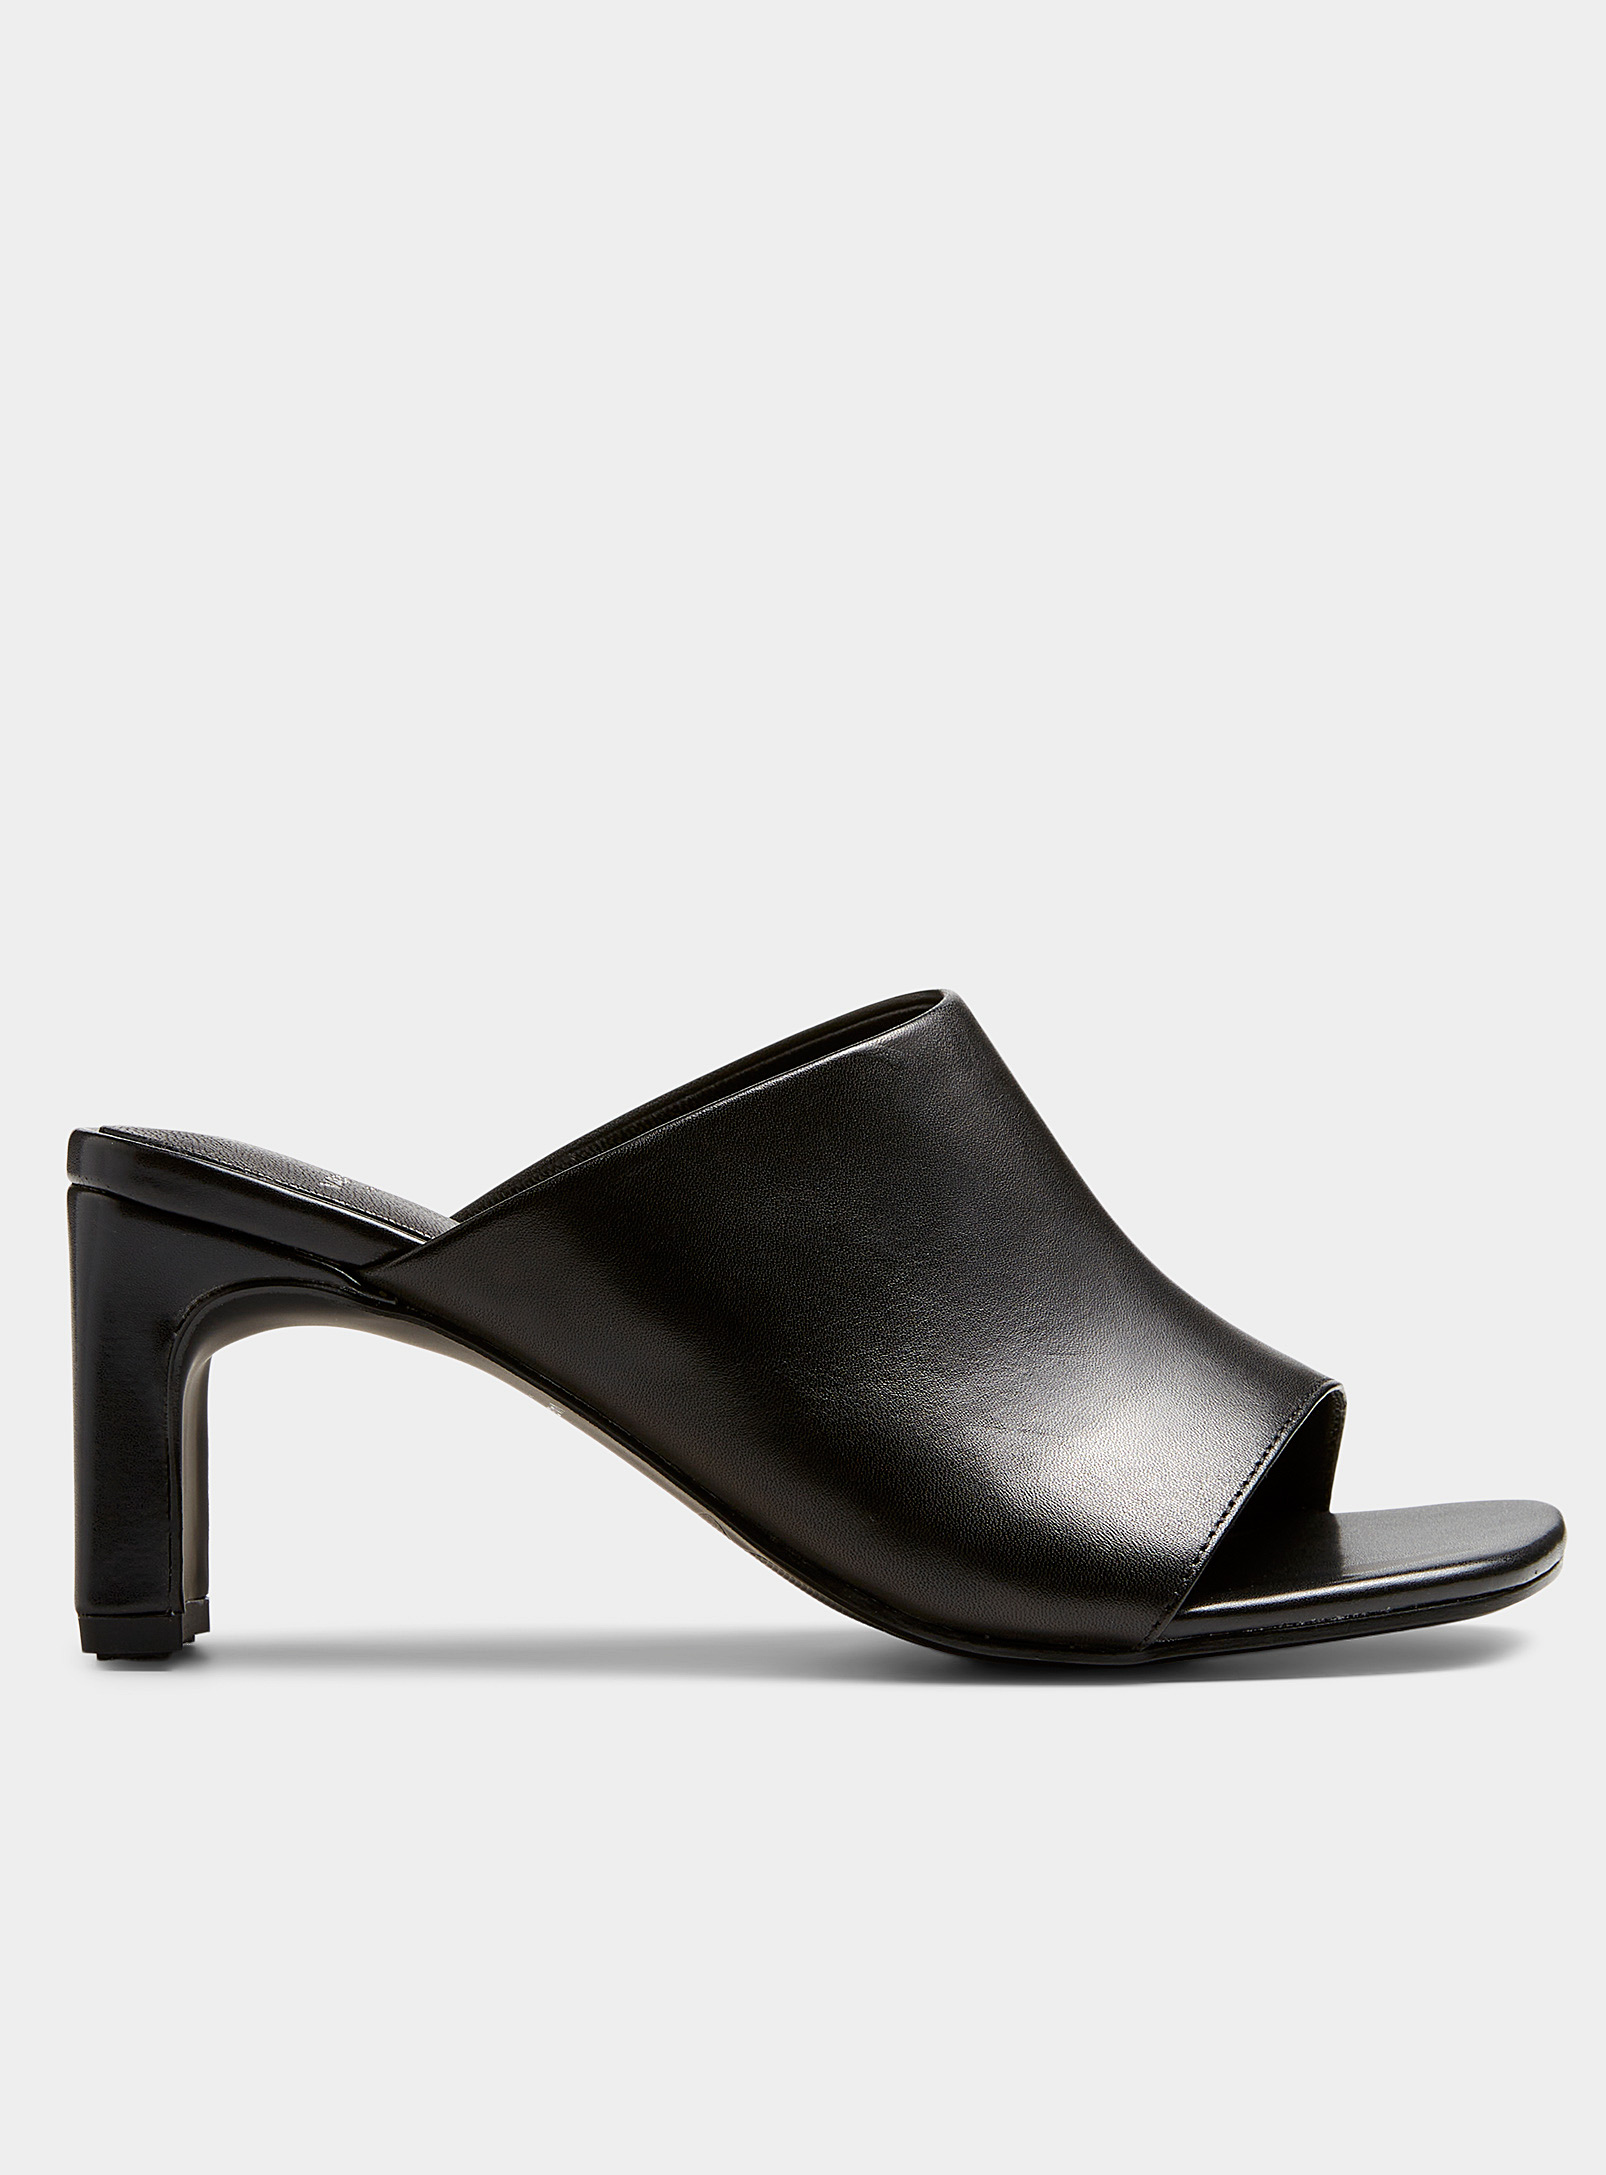 Vagabond Shoemakers - Women's Luisa leather mule sandals | Galeries de la Capitale